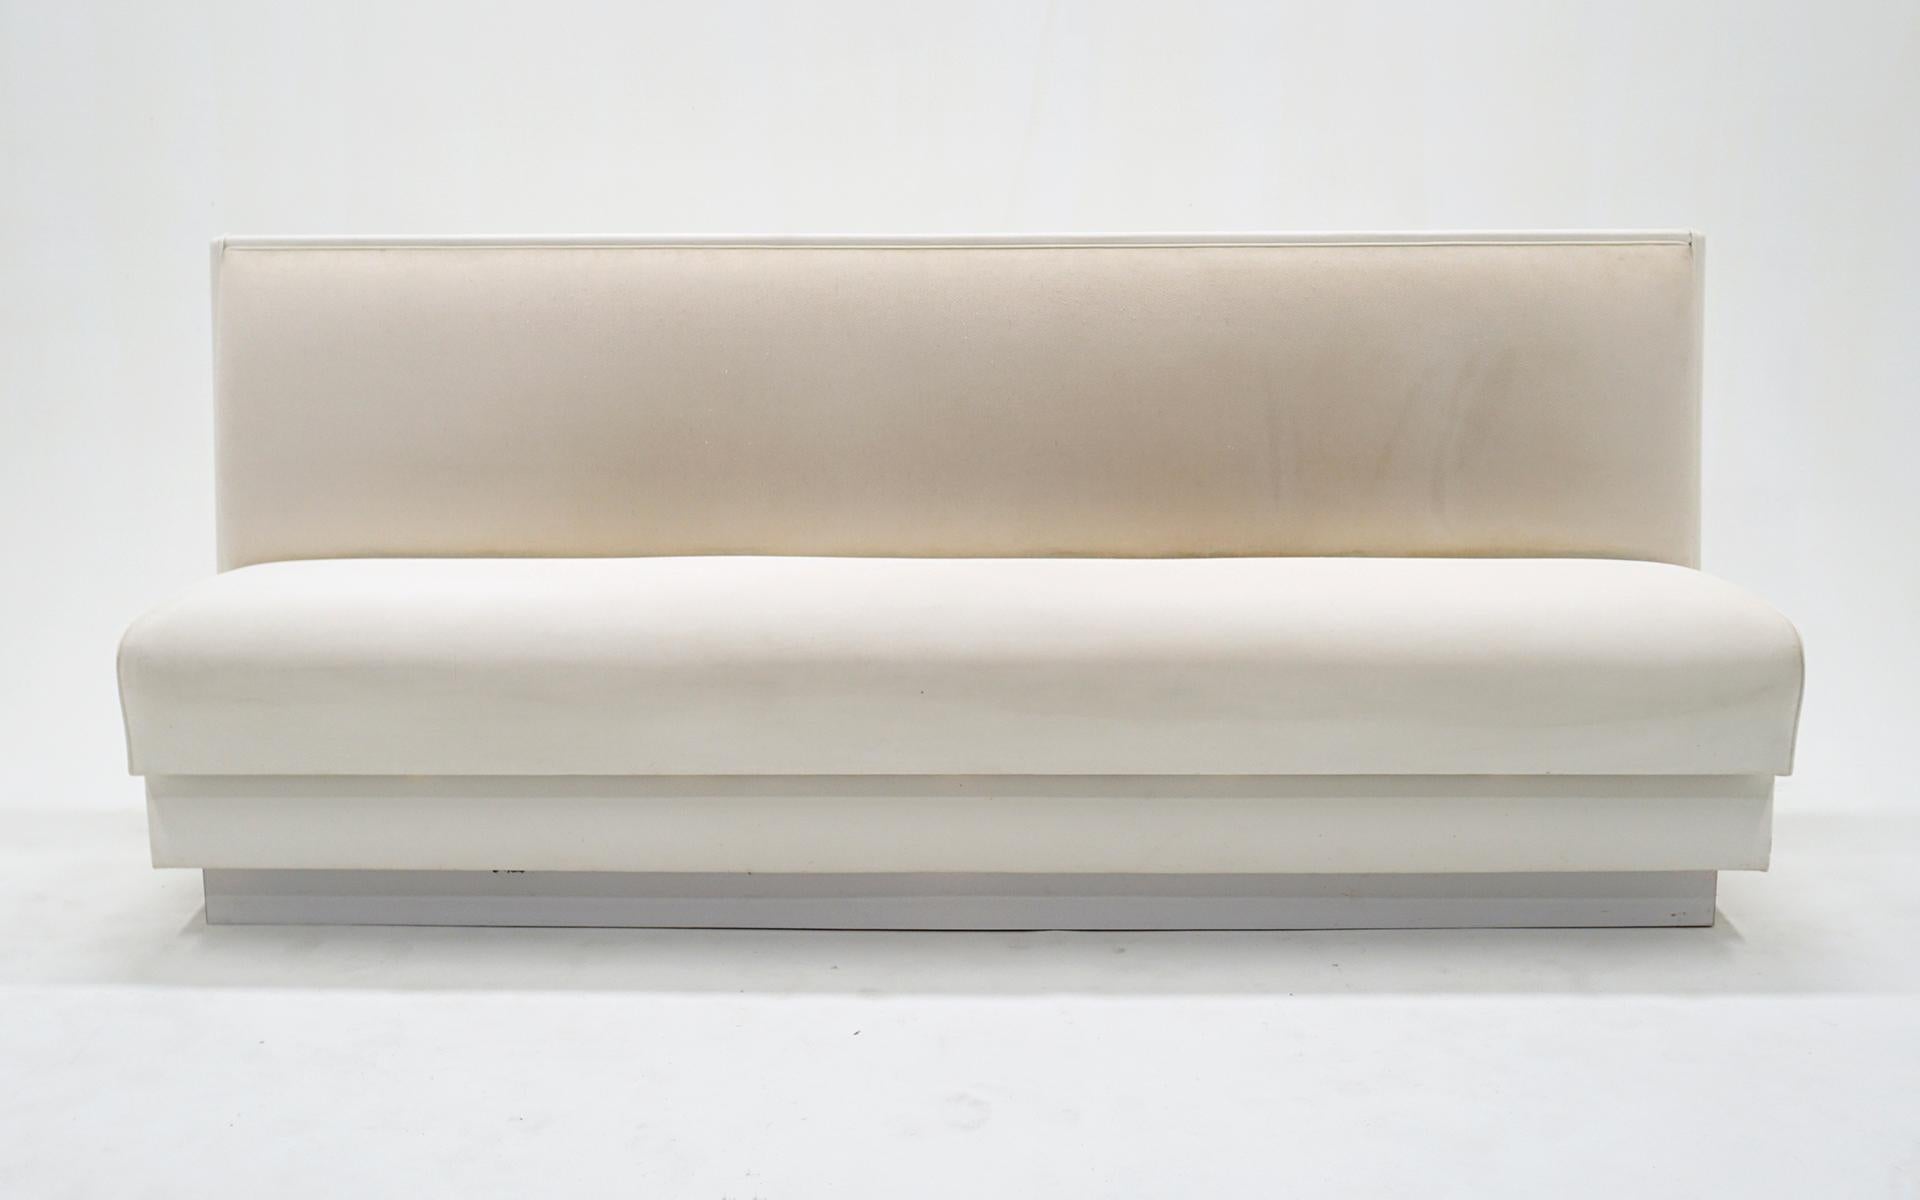 Maßgefertigte Bank / Bank / Sofa von höchster Qualität.  Sitz und Rückenlehne sind weiß gepolstert und mit lederähnlichen Vinylseiten und -rücken ausgestattet.  Es wurde speziell für einen Raum angefertigt und sehr wenig benutzt.  Keine Flecken,